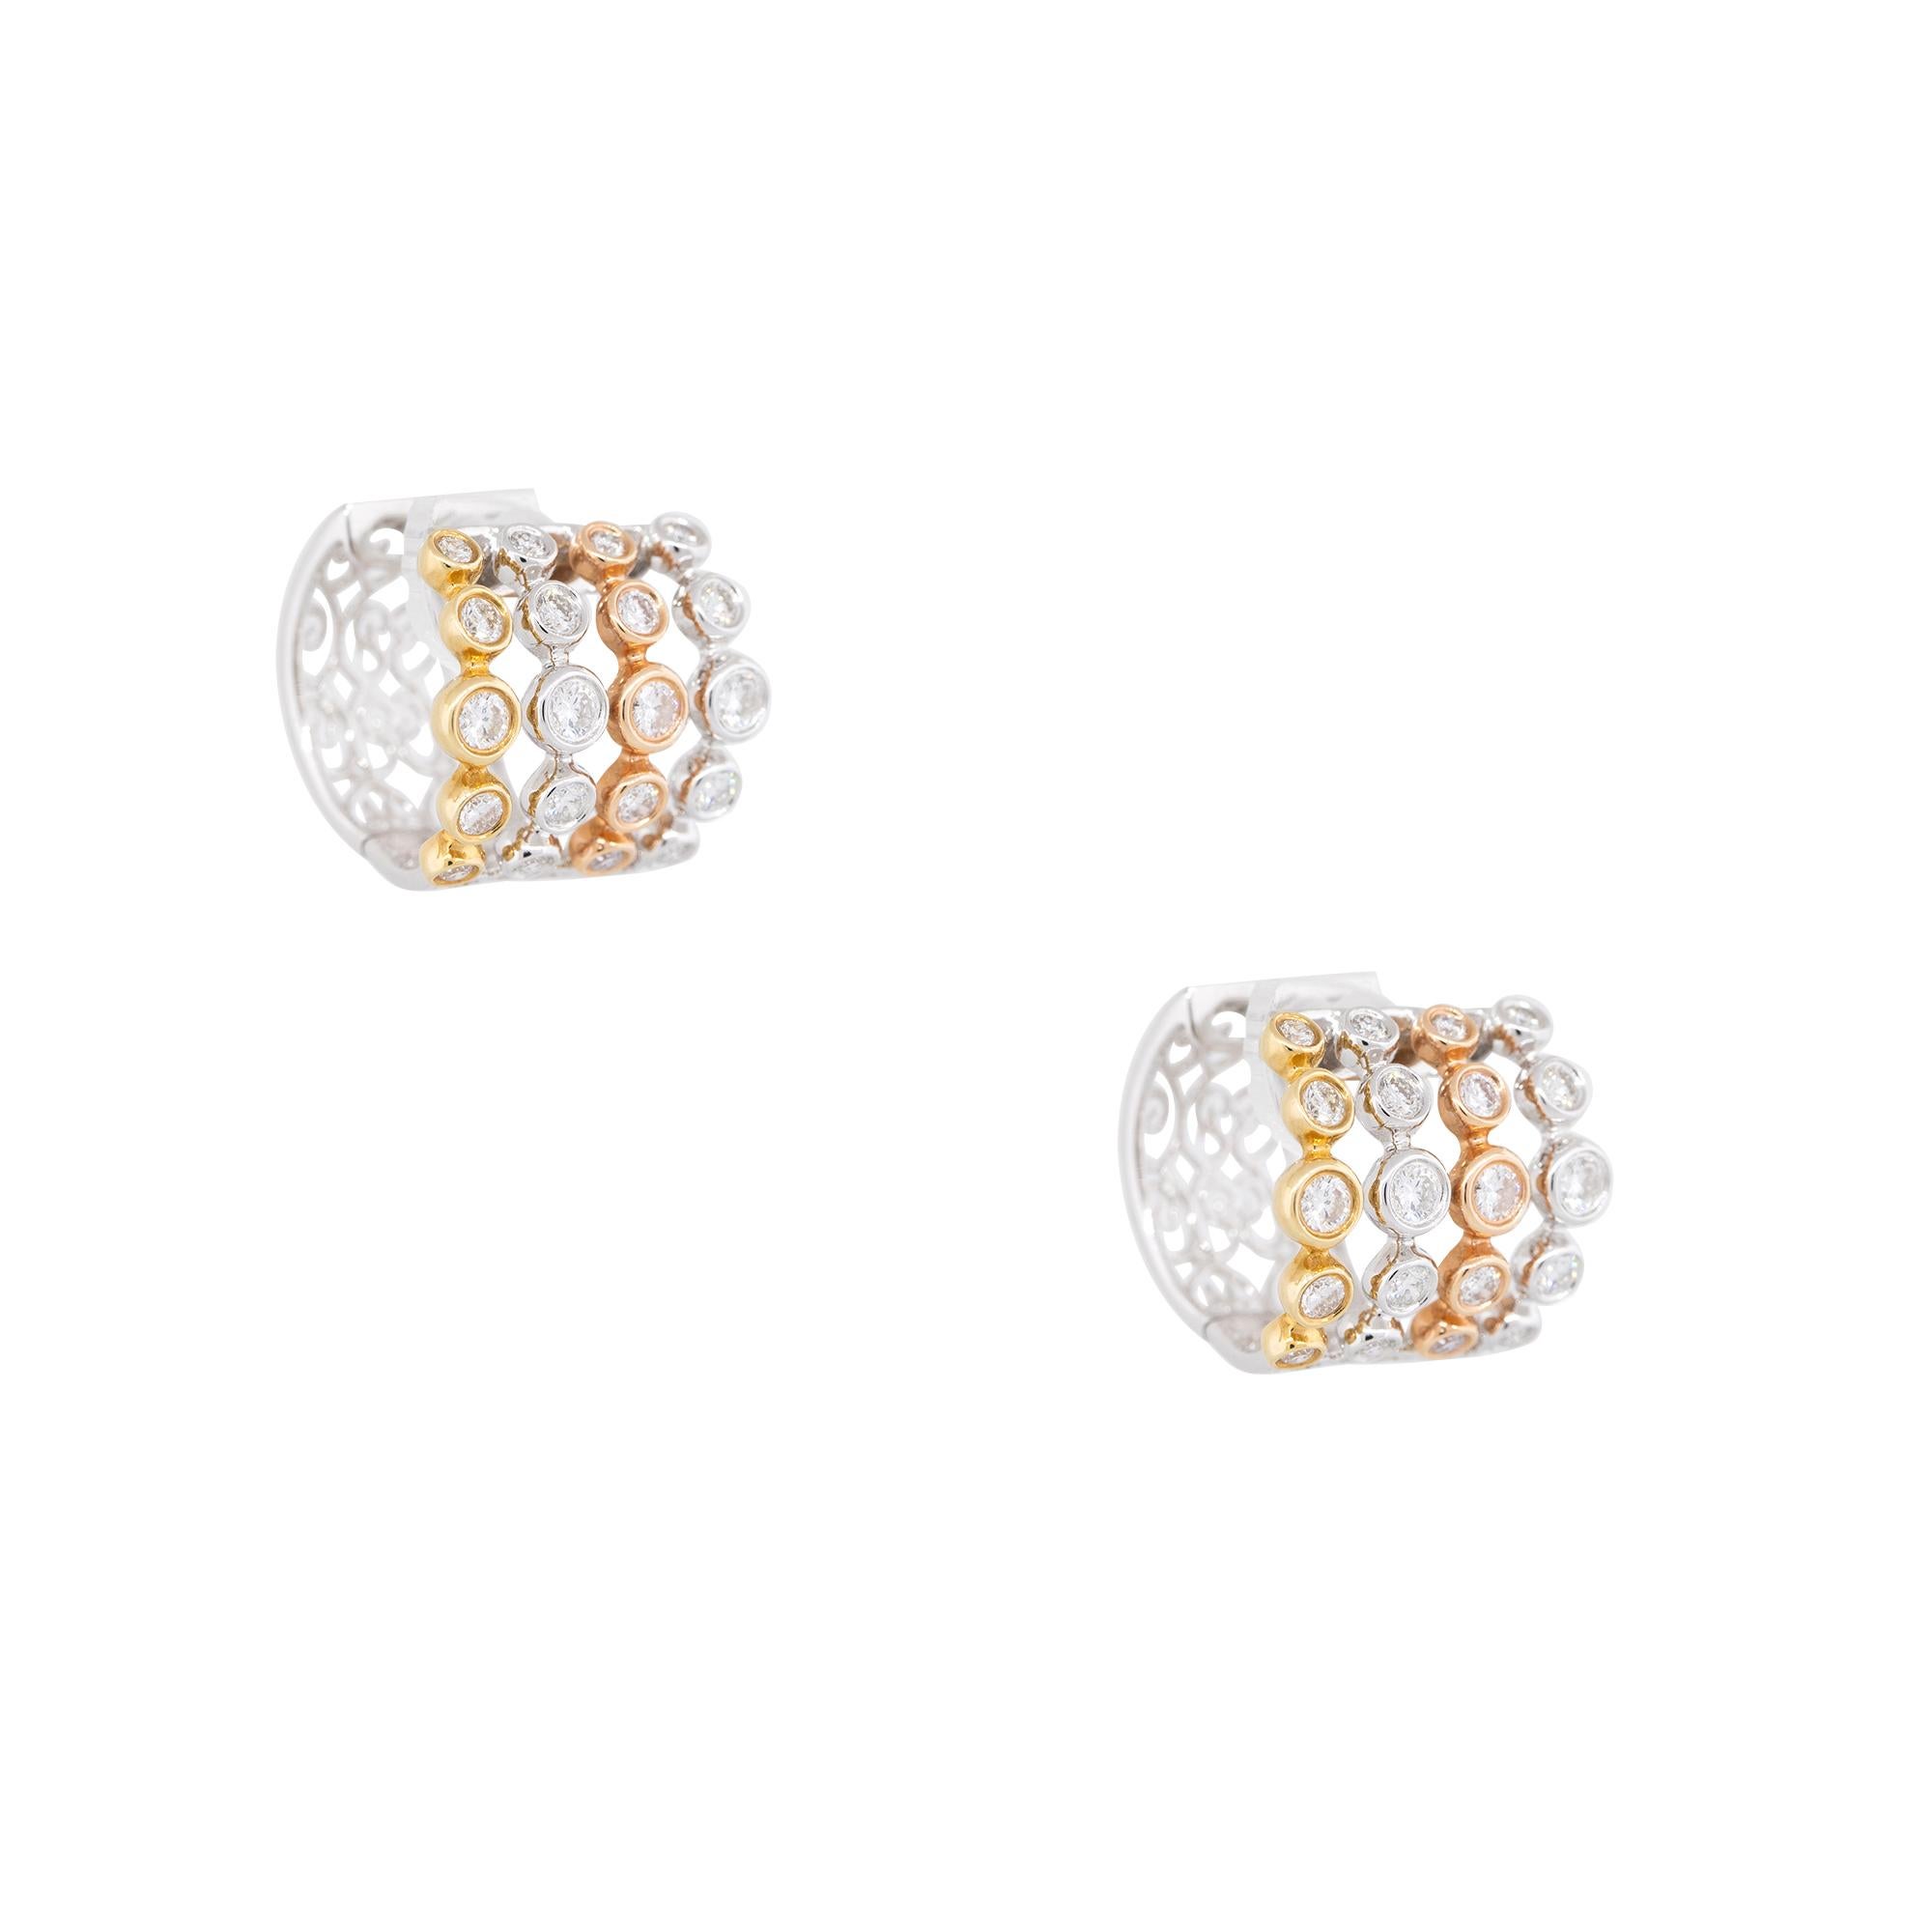 Round Cut 1.98 Carat Diamond 5-Row Bezel Set Hoop Earrings 18 Karat In Stock For Sale